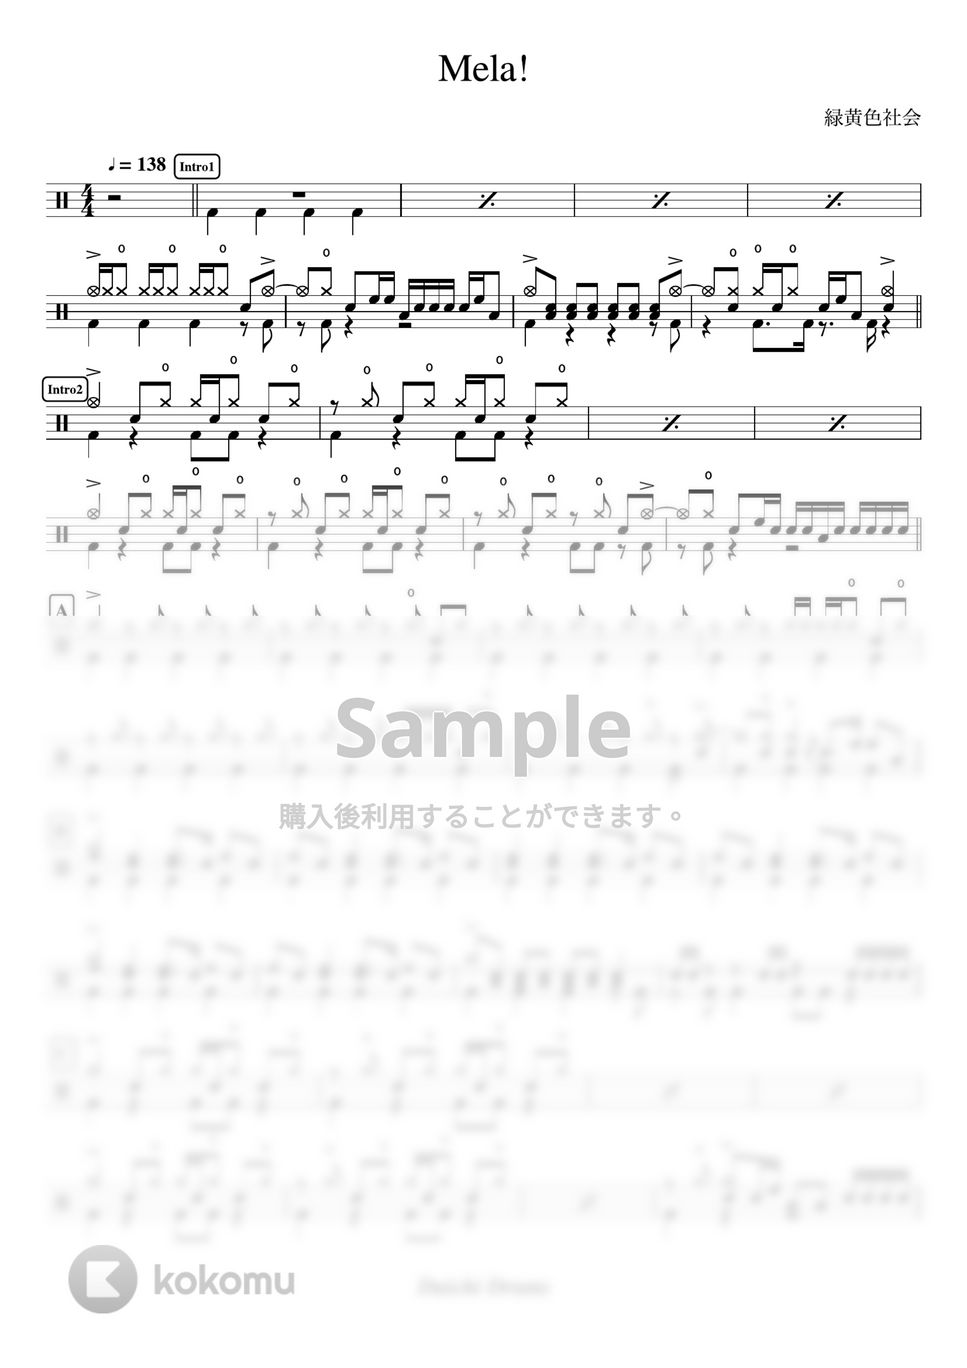 緑黄色社会 - Mela! by Daichi Drums